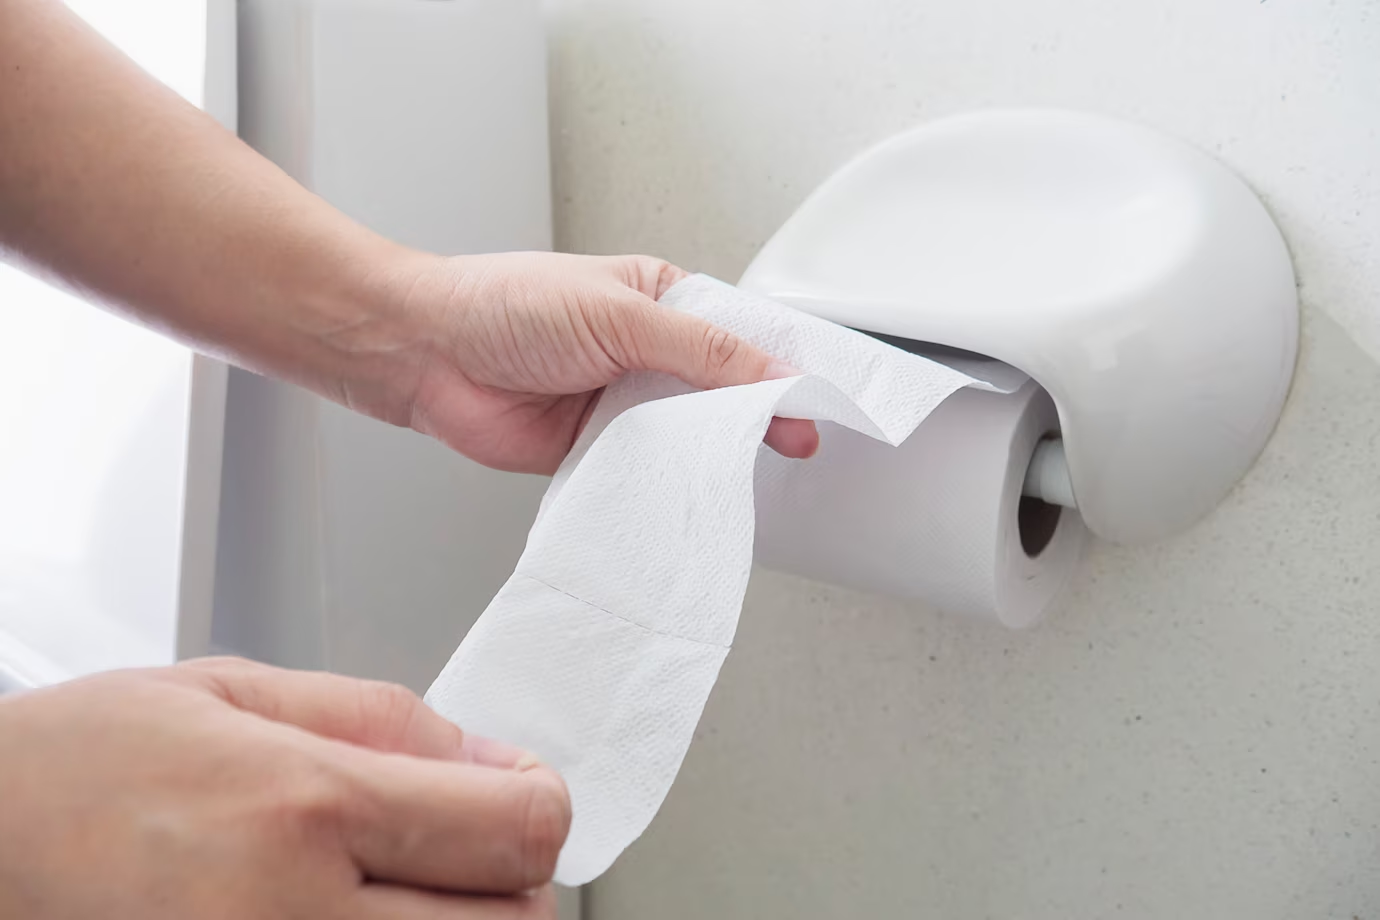 กระดาษทิชชู่ในห้องน้ำมักมีเชื้อโรคซ่อนตัวอยู่